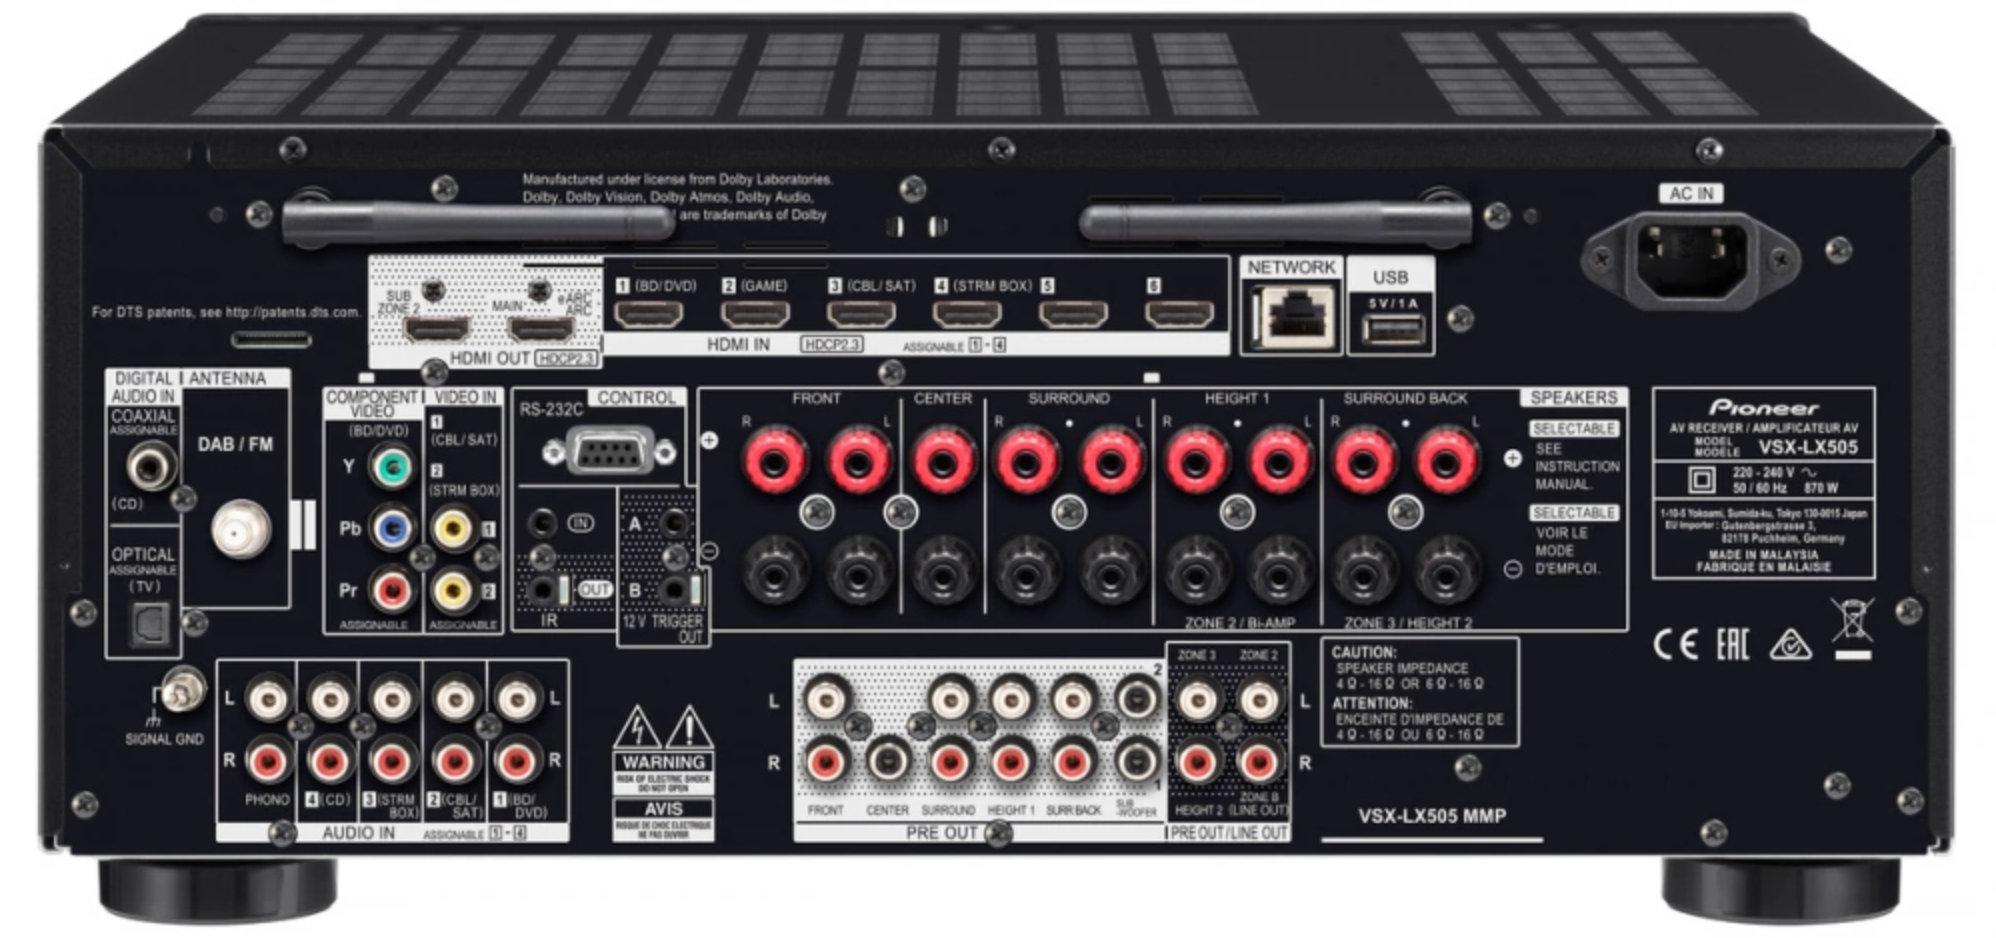 Pioneer VSX-LX505 9.2 channel AV amplifier